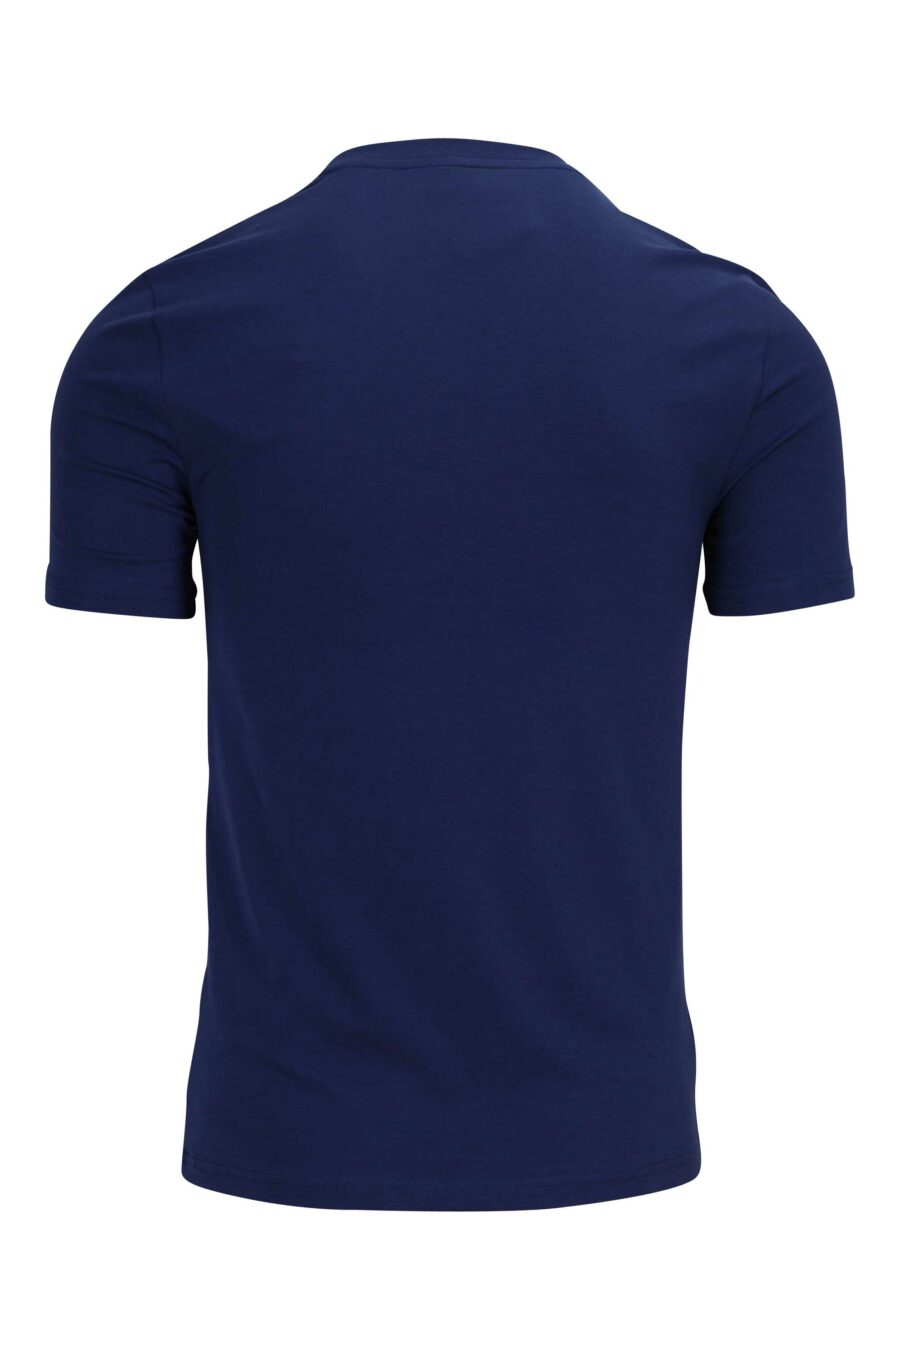 T-shirt azul-marinho com maxilogue preto - 889316649383 1